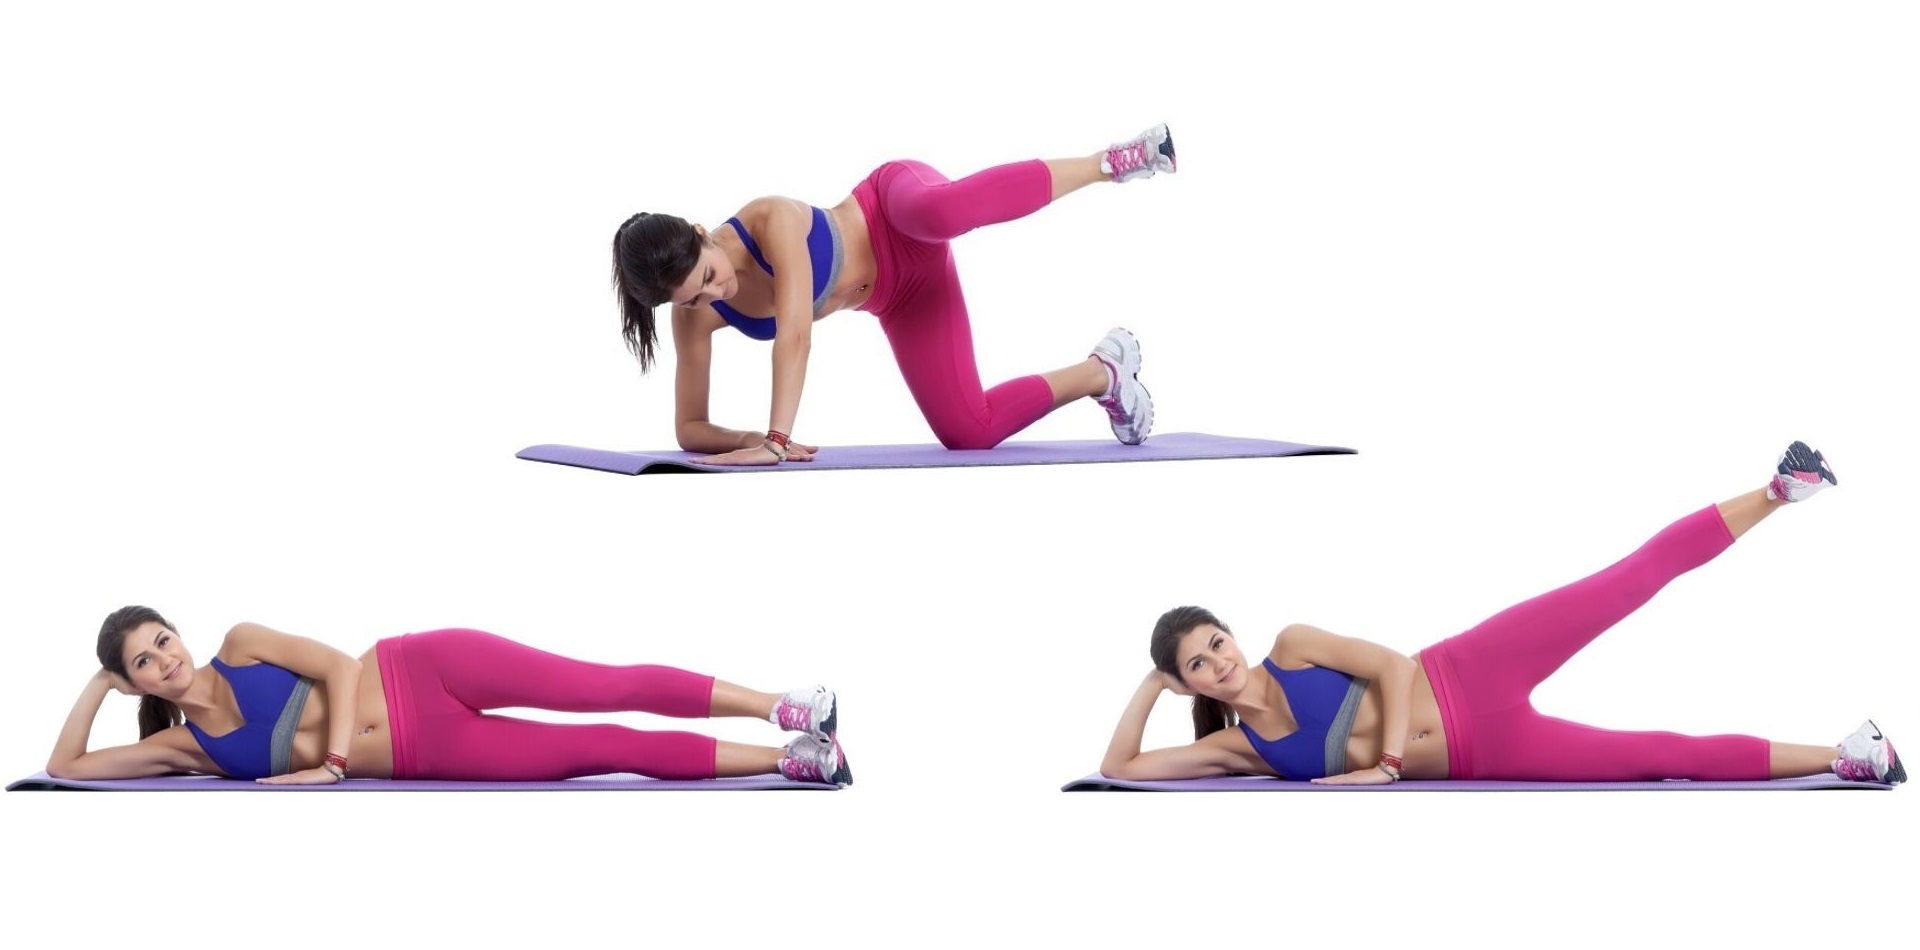 股関節群の筋肉を鍛える 簡単エクササイズ5種目 トレーニング スポーツ Melos